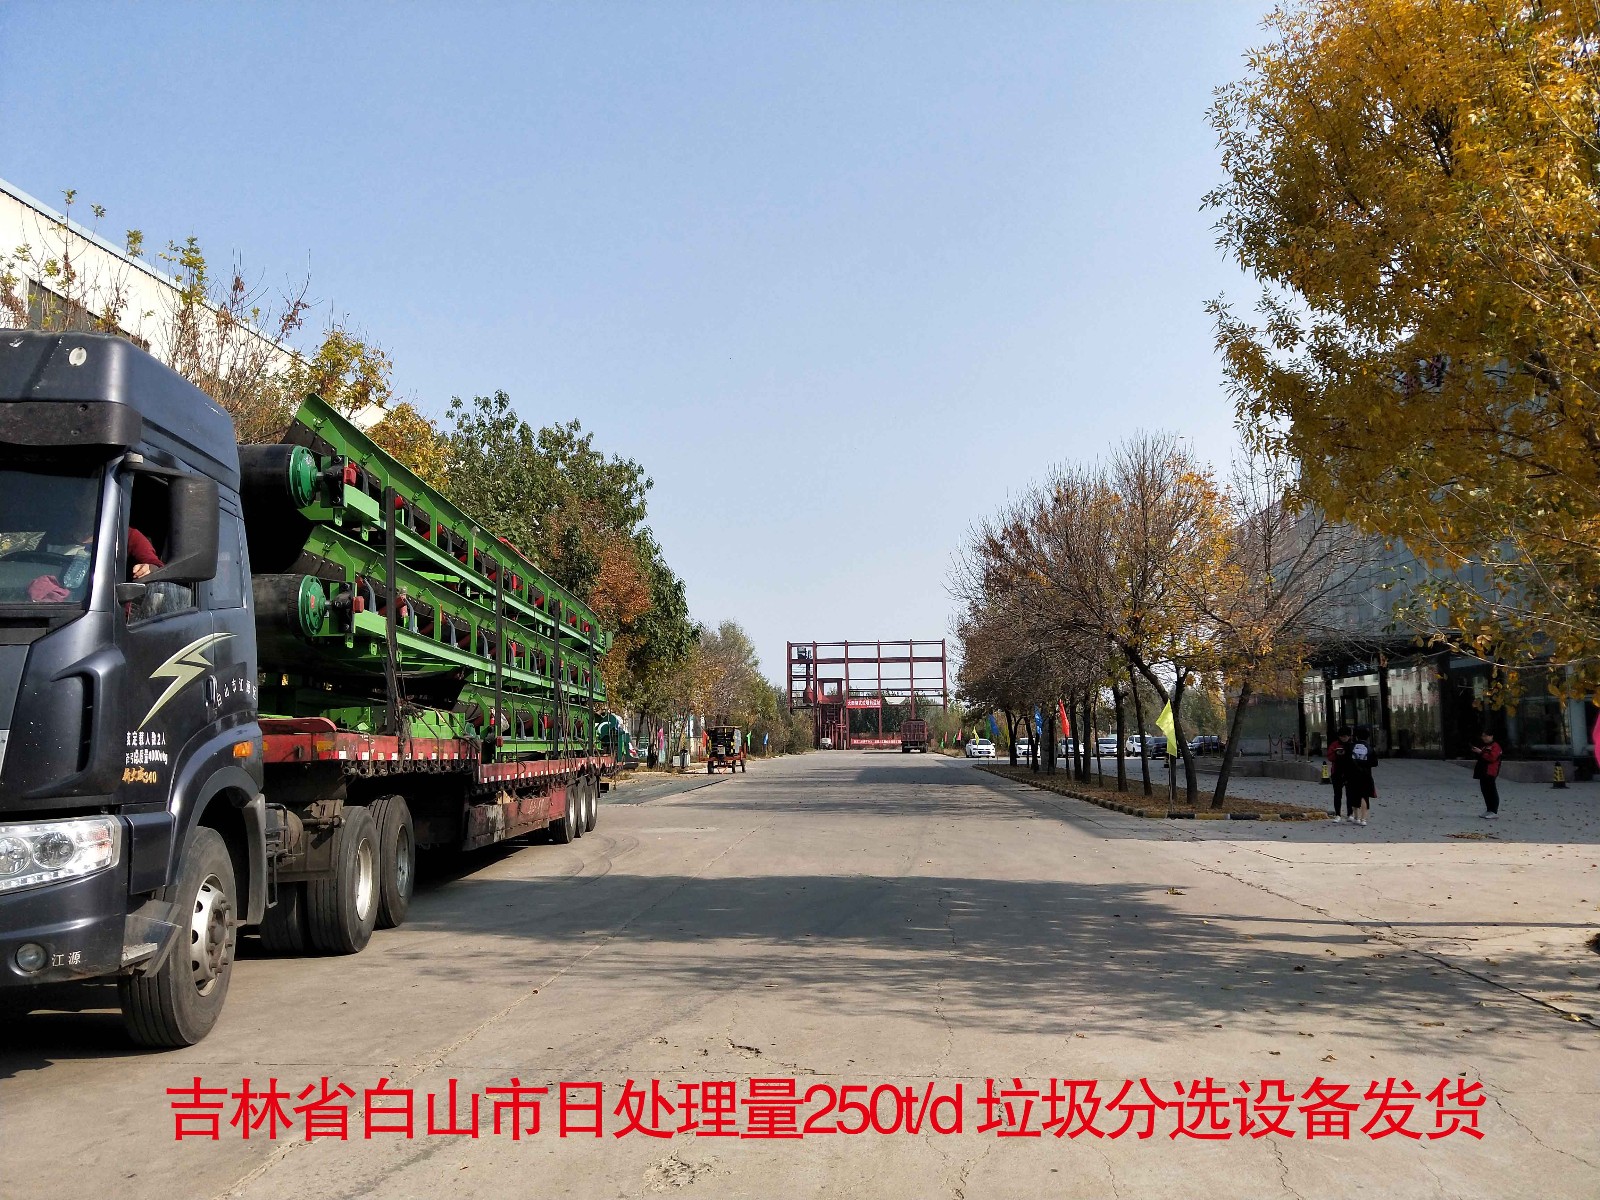 吉林省白山市日处理量250t/d 垃圾分选设备装车发货